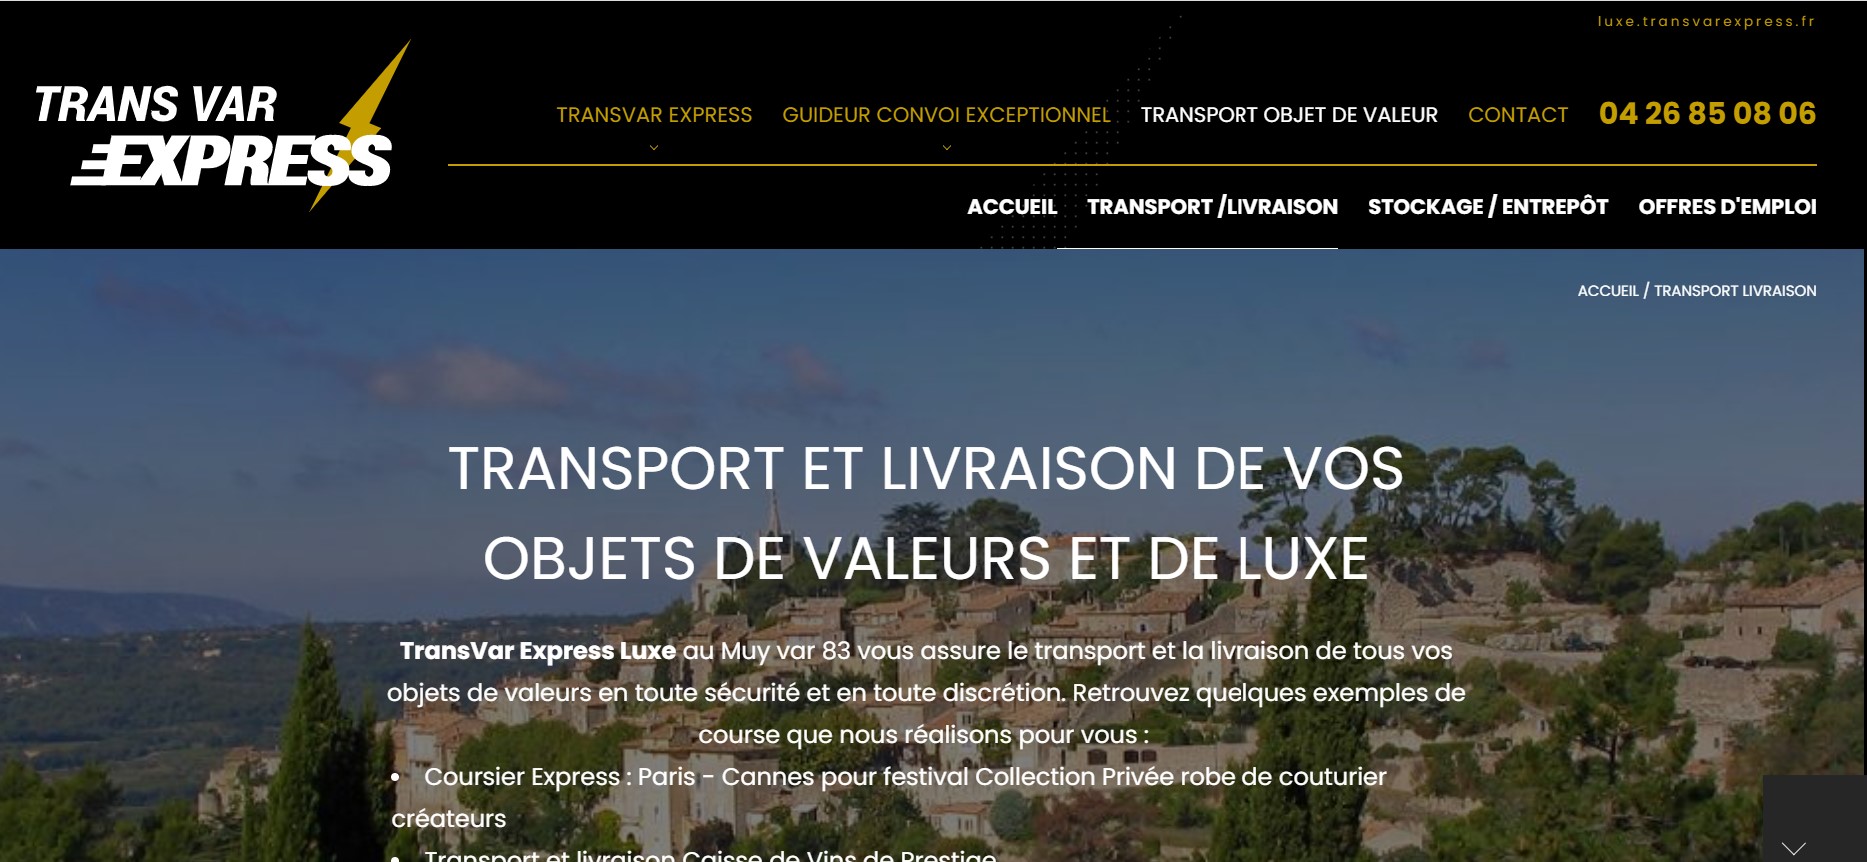 Création de site pour TransVar Express, spécialiste du transport d'objet de valeur et de luxe sur la Côté d'Azur